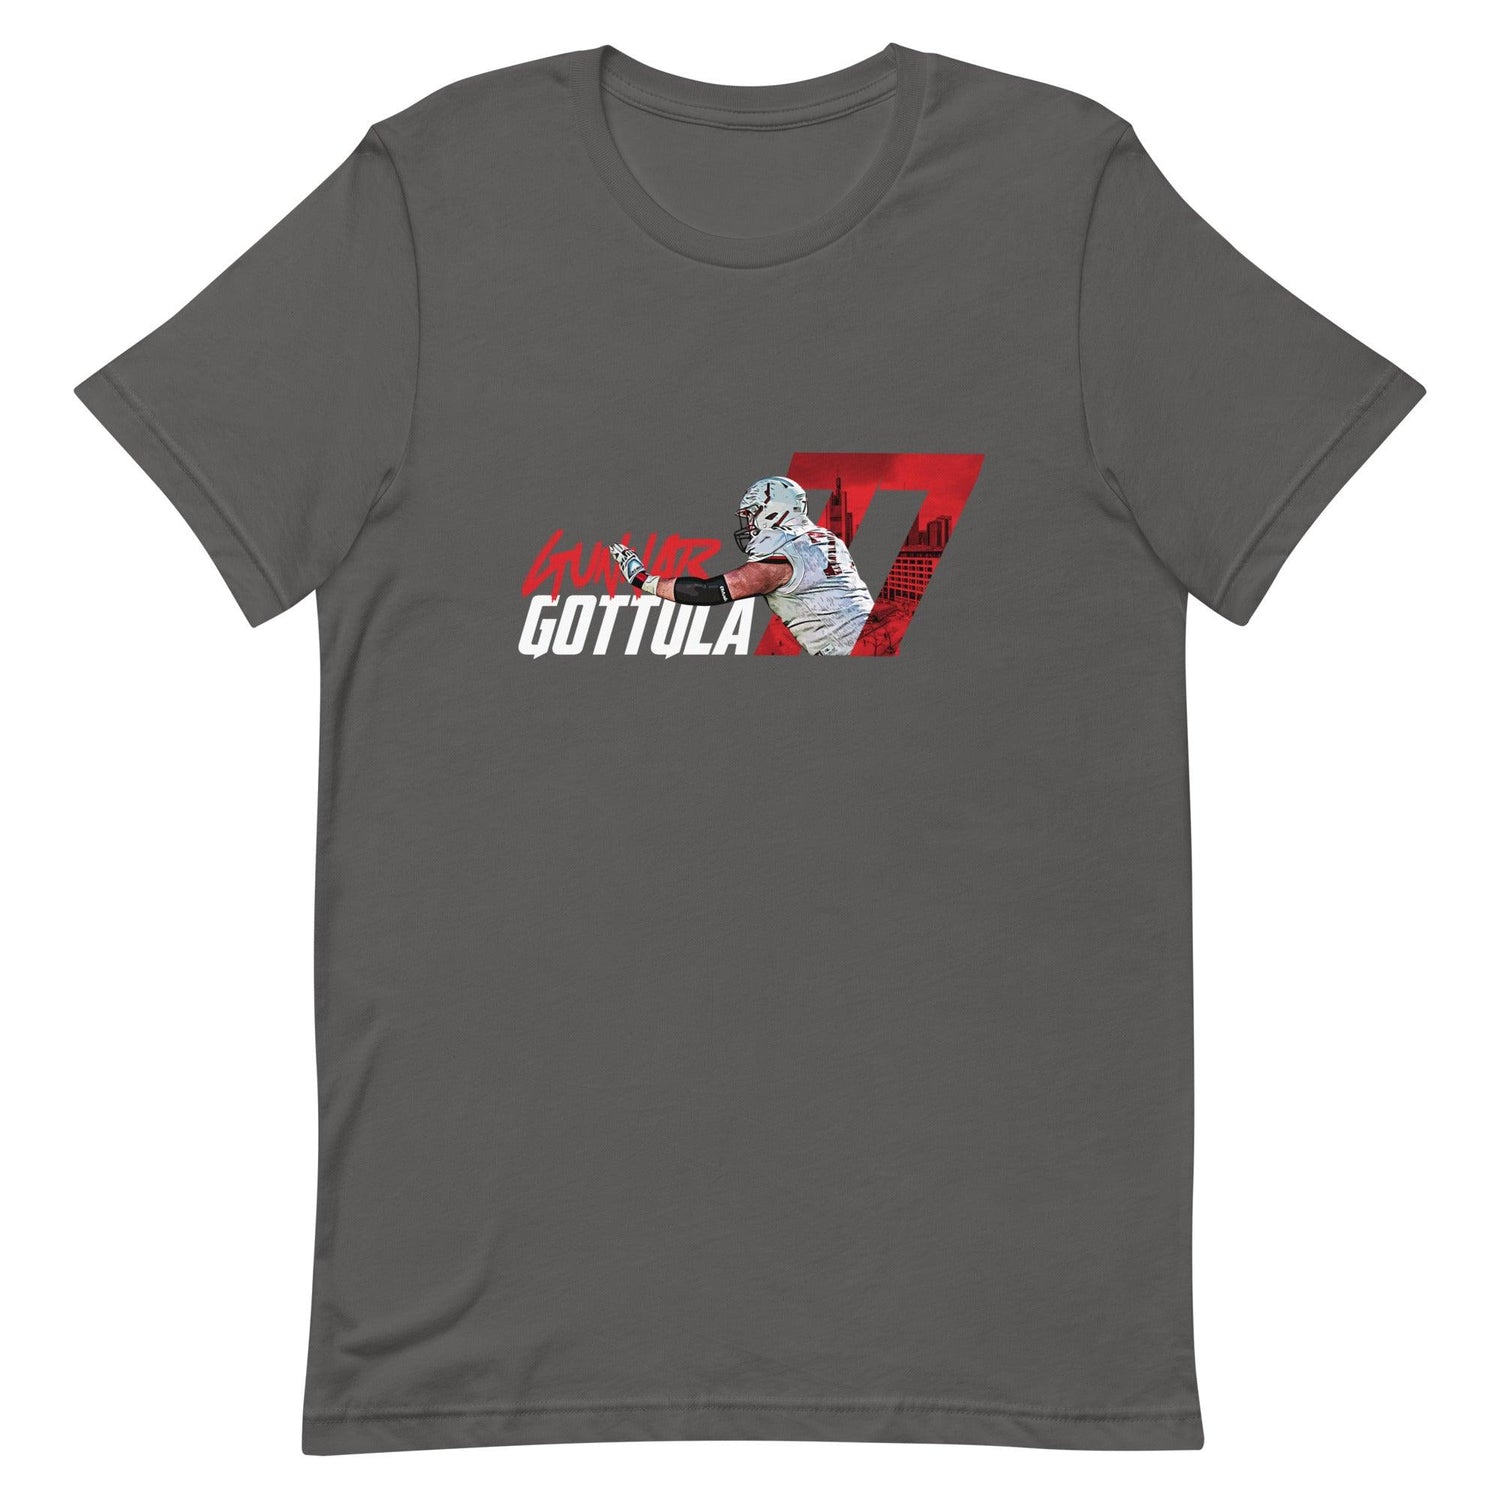 Gunnar Gottula "Gameday" t-shirt - Fan Arch